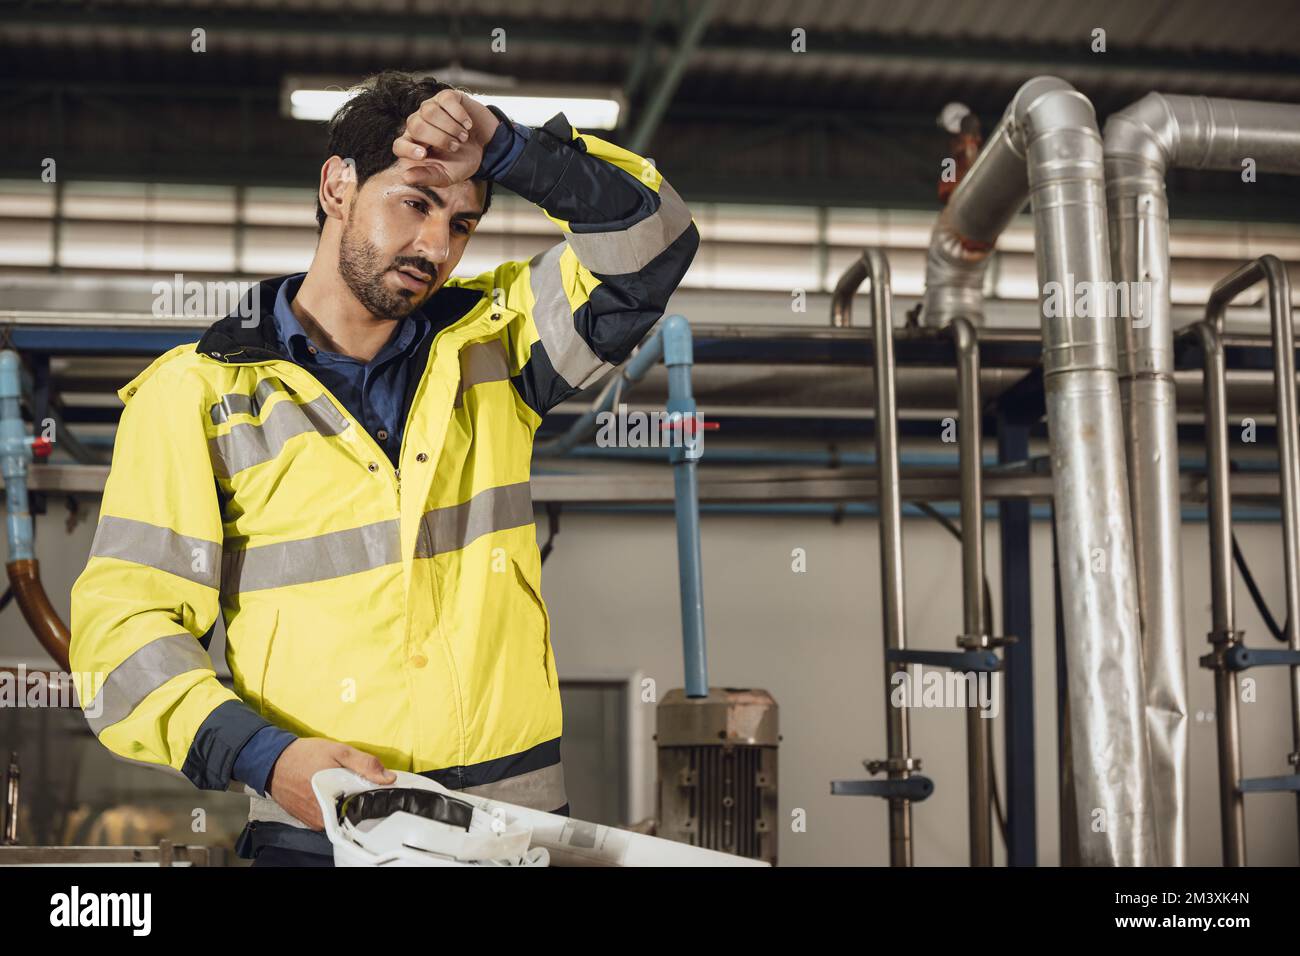 travailleur d'ingénieur fatigué travail dur fatigue personnel masculin dans l'usine temps chaud Banque D'Images